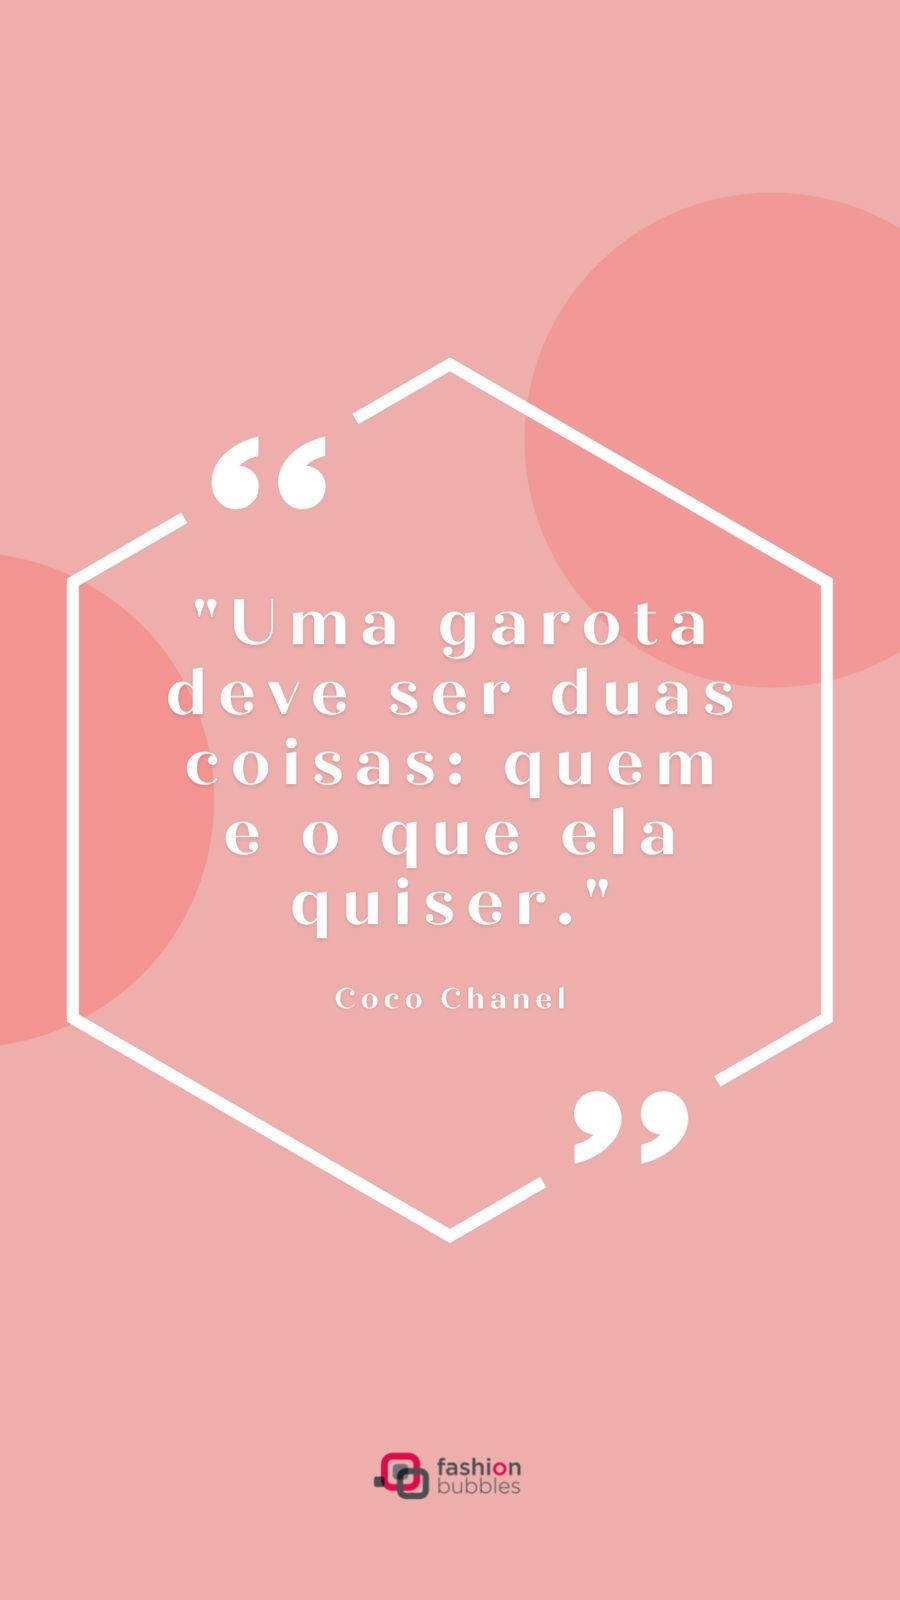 Frase sobre empreendedorismo feminino:  "Uma garota deve ser duas coisas: quem e o que ela quiser." Coco Chanel